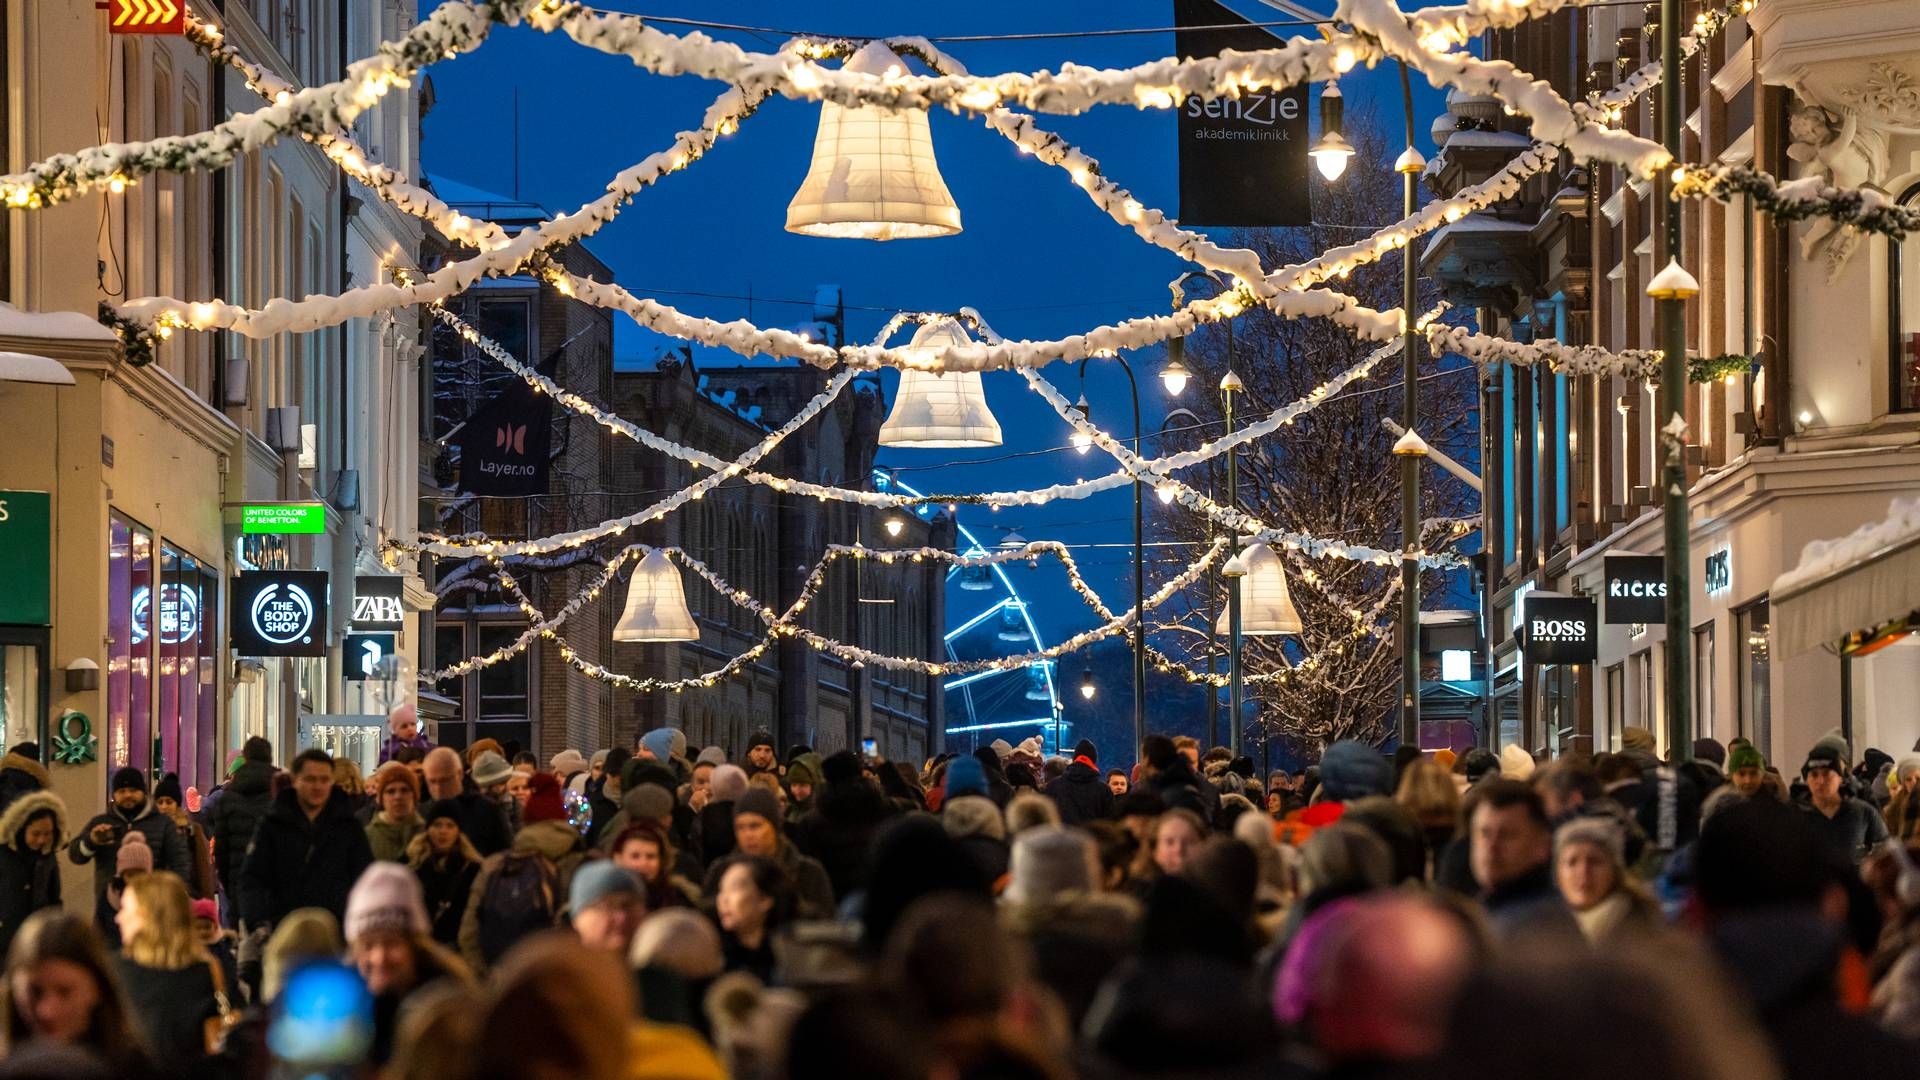 Mye folk er i sentrum for å handle gaver siste helg før jul. | Foto: Heiko Junge / NTB